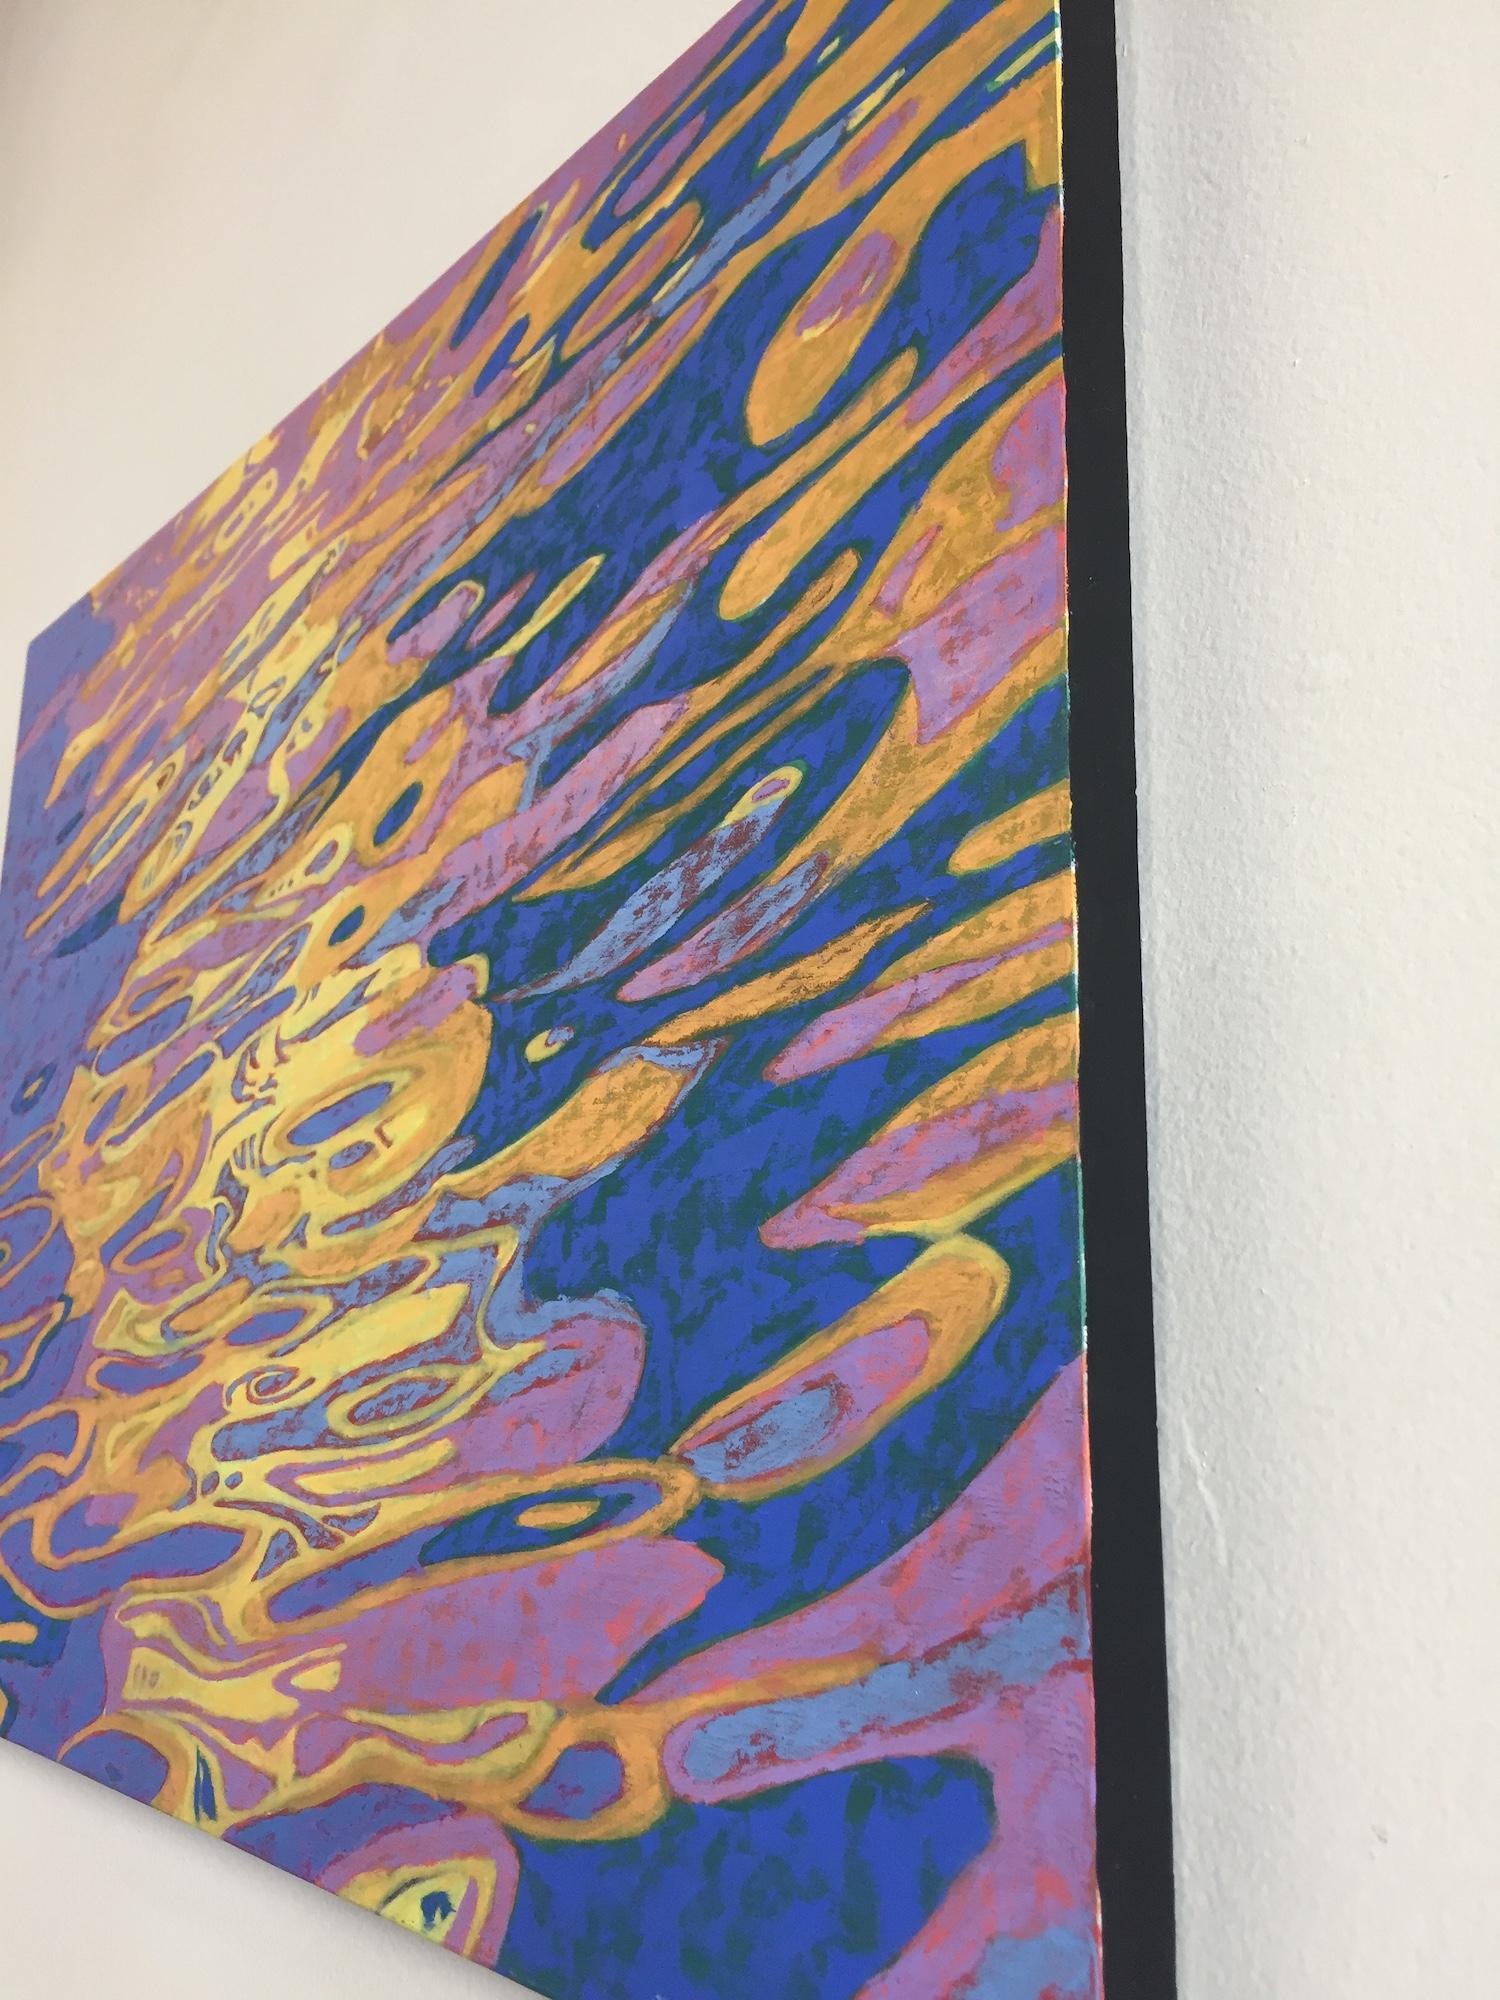 « Abstract Reflections », eau, bleu, jaune, orange, rose, peinture à l'huile - Marron Abstract Painting par Marcia Wise